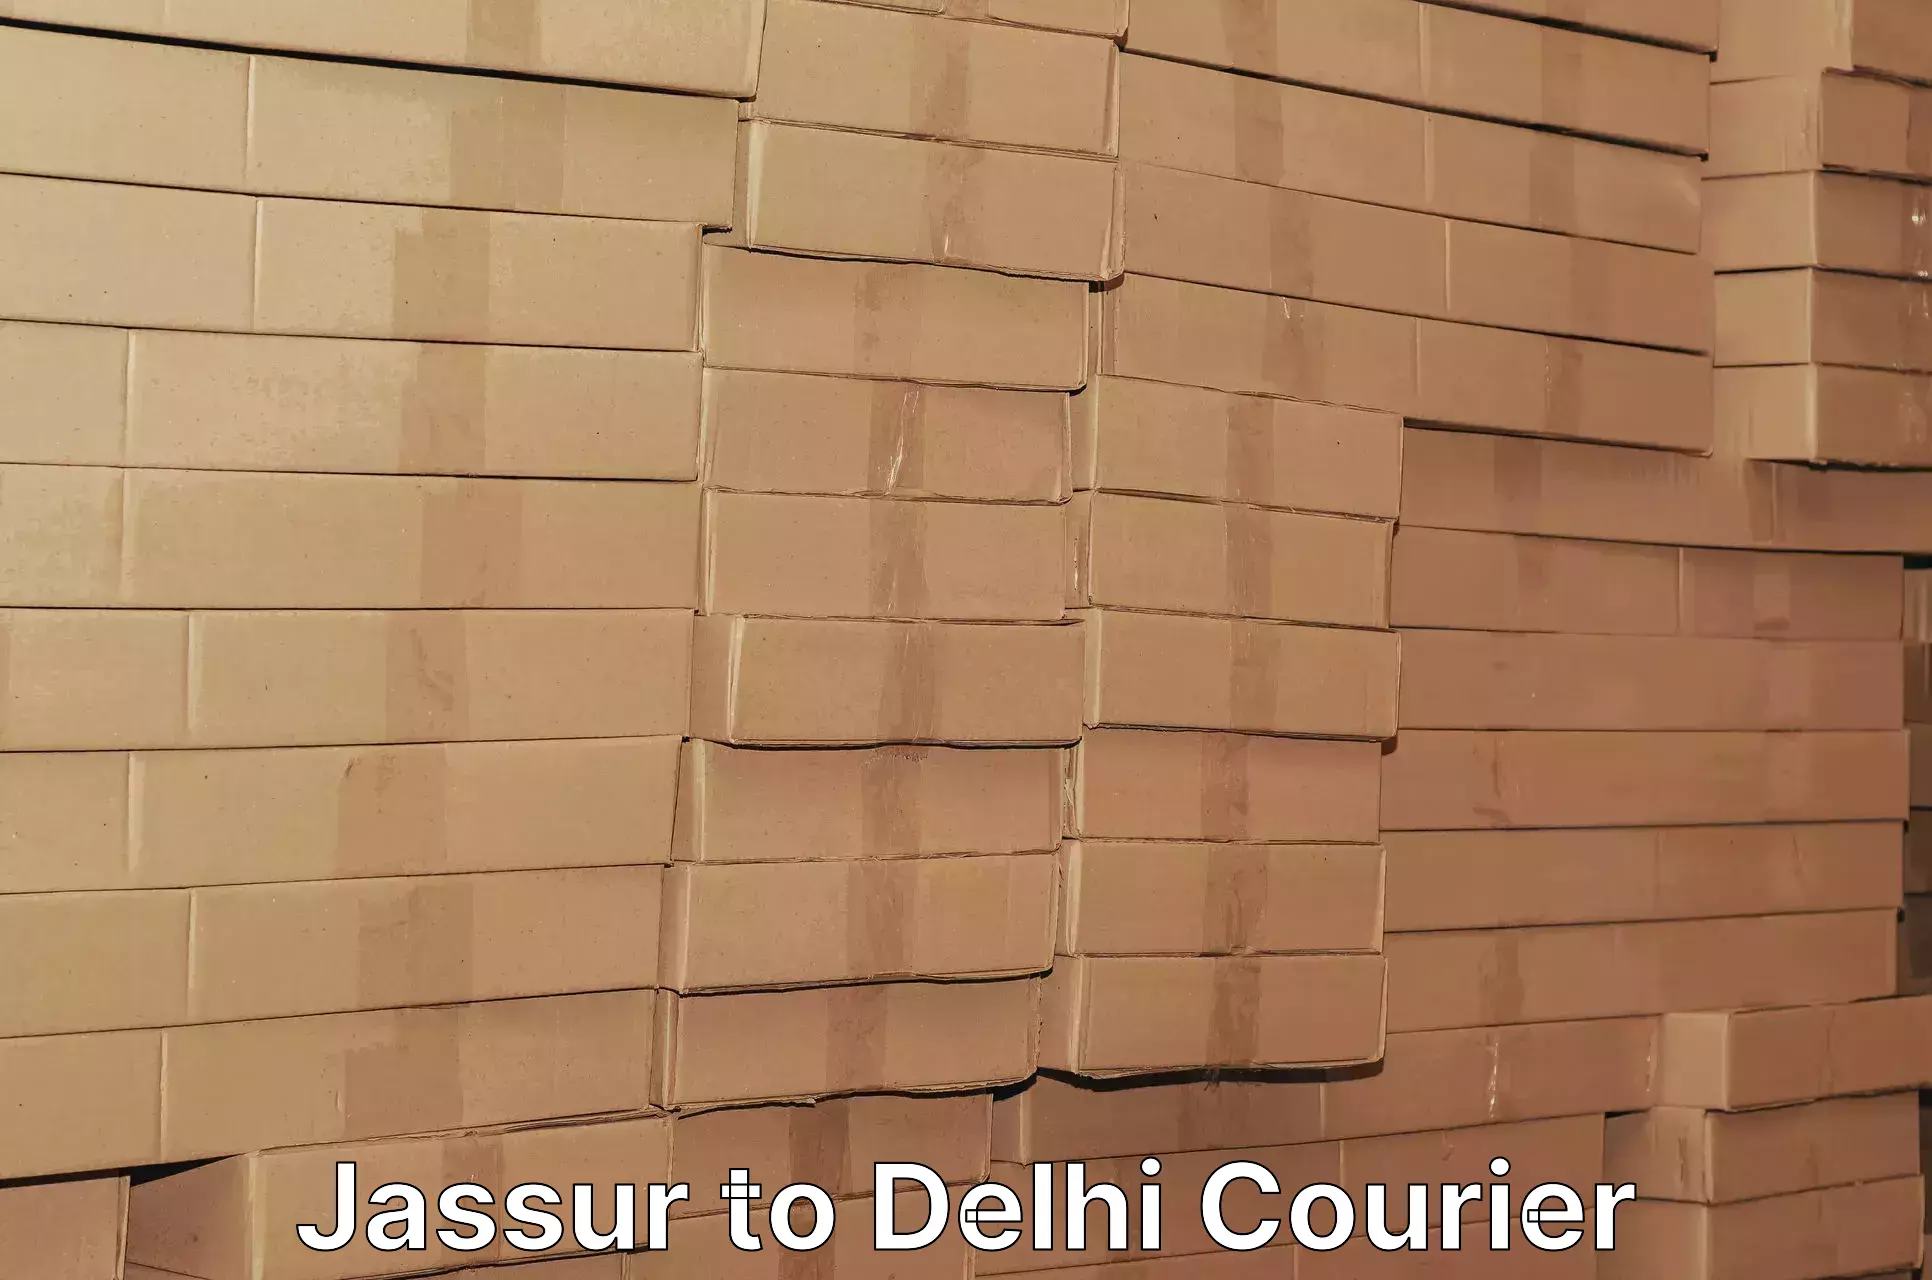 Efficient shipping platforms Jassur to Jamia Millia Islamia New Delhi